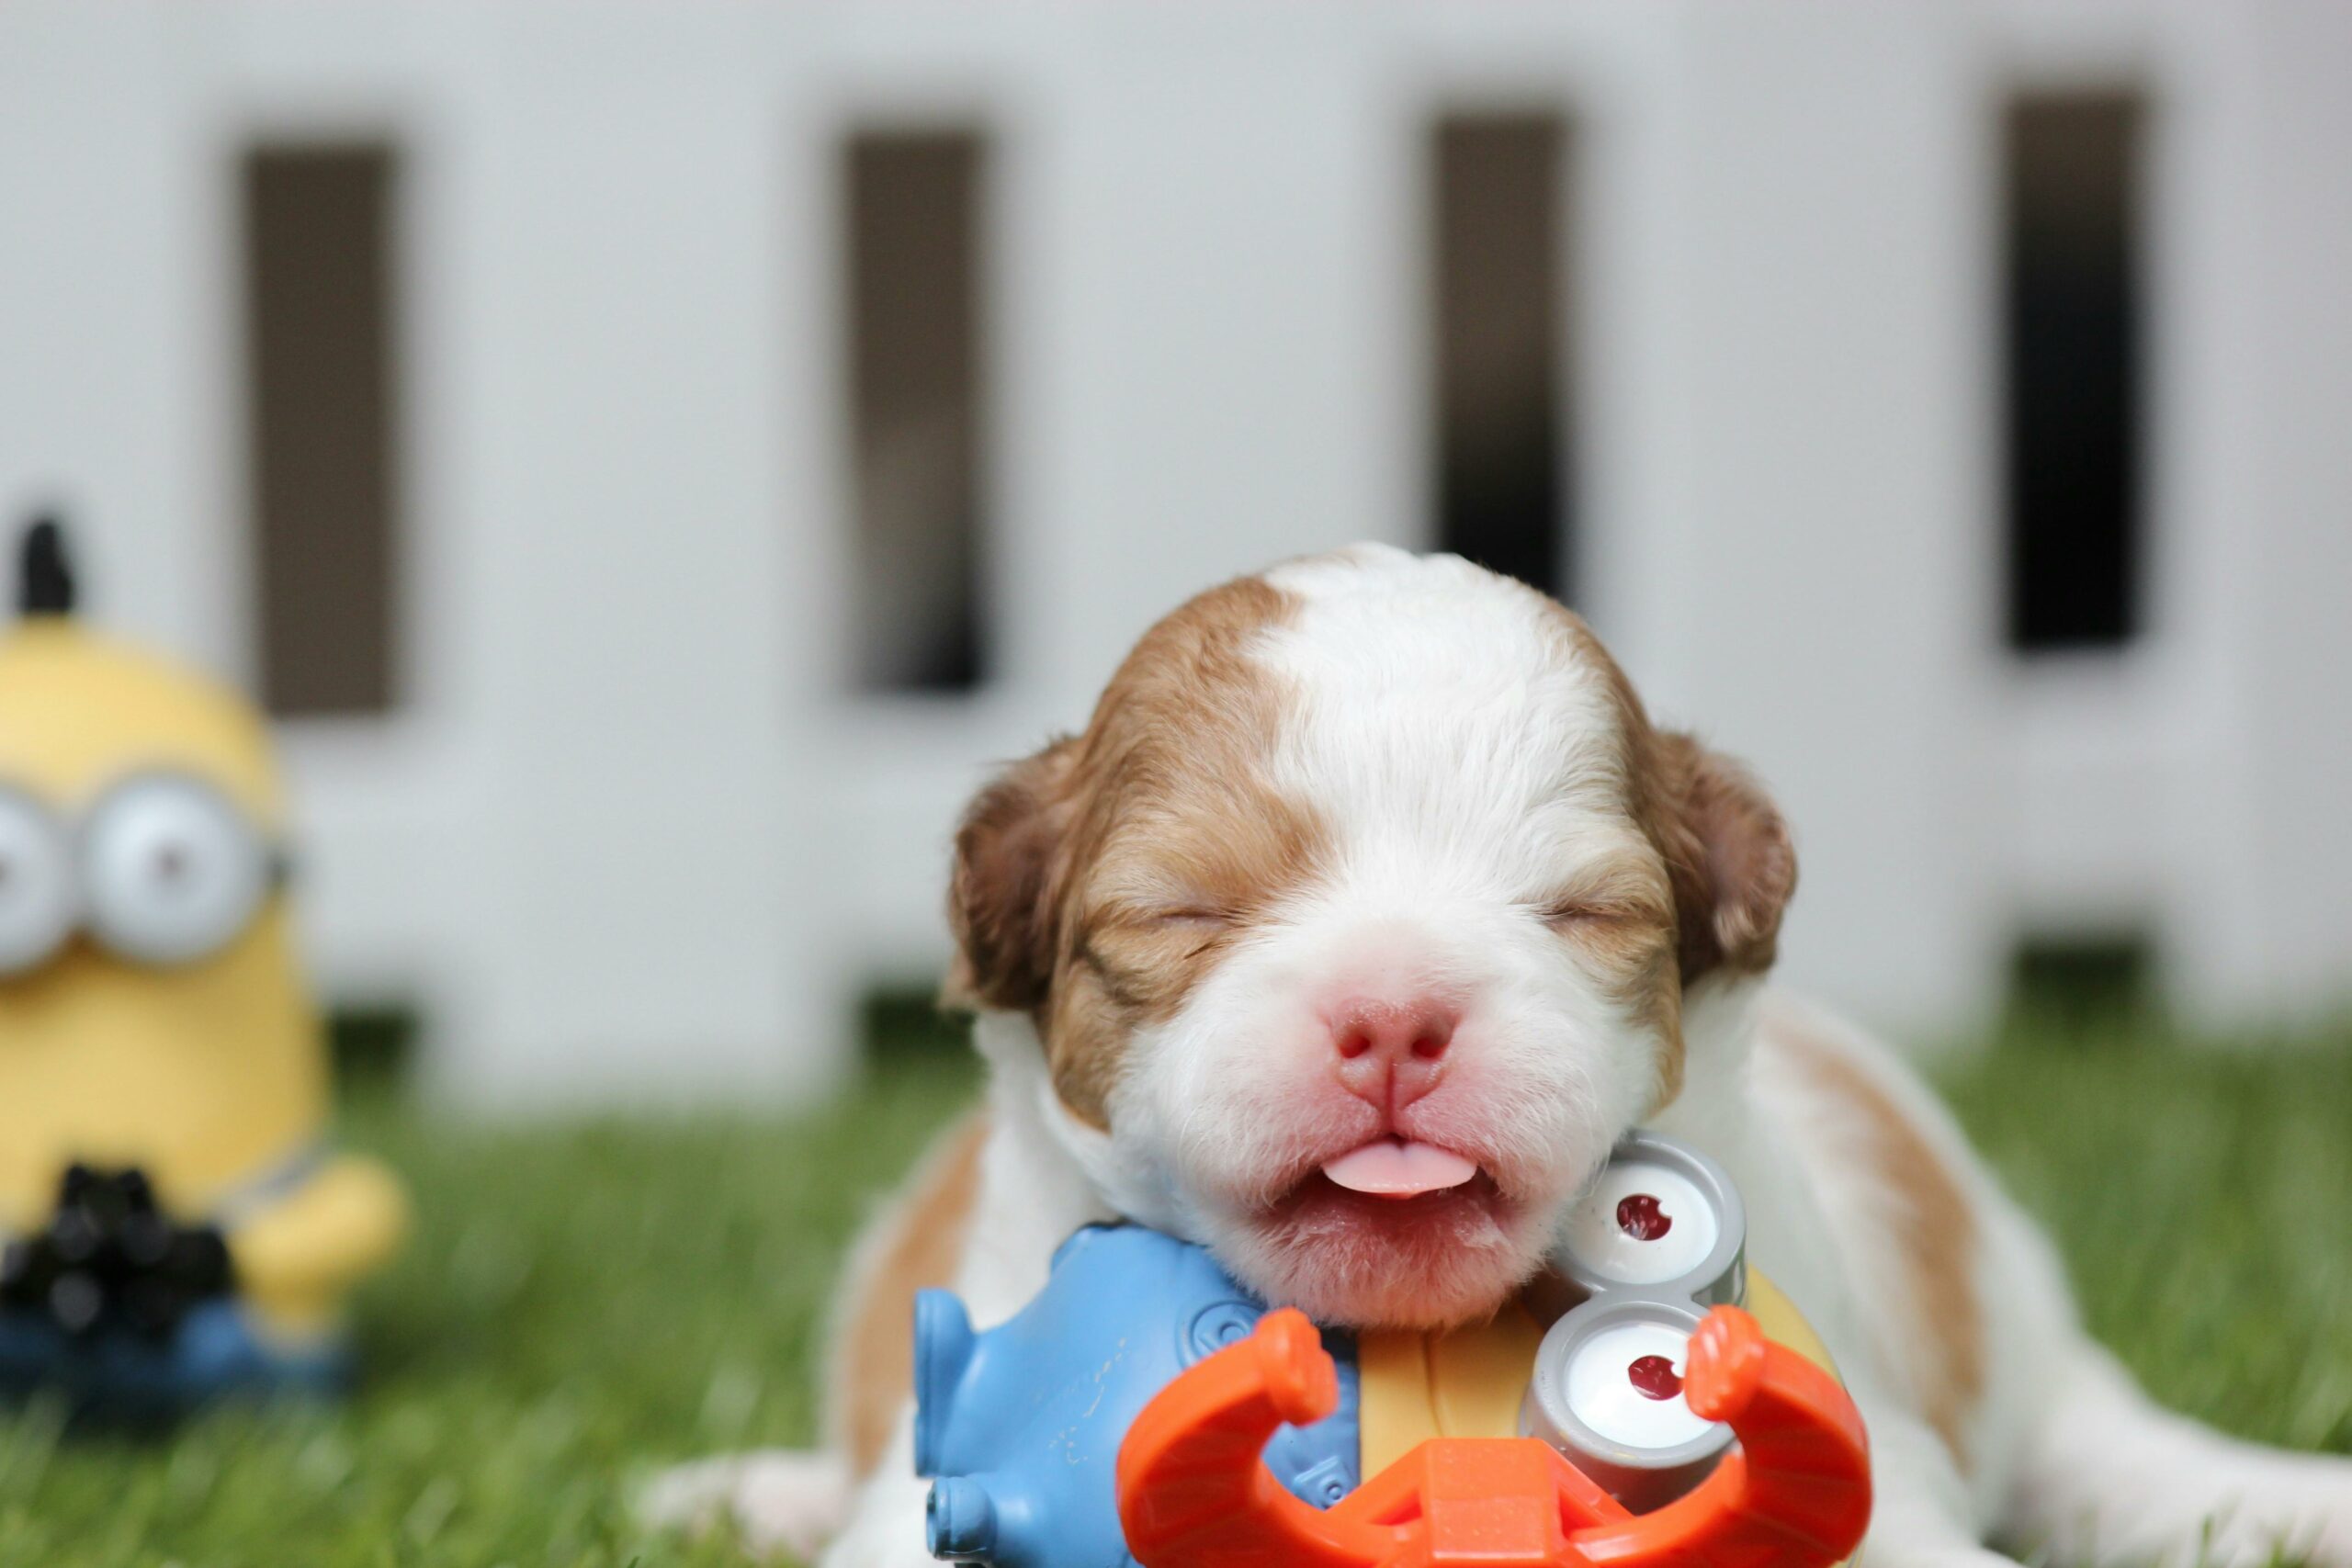 A newborn puppy lying on Minion toys.